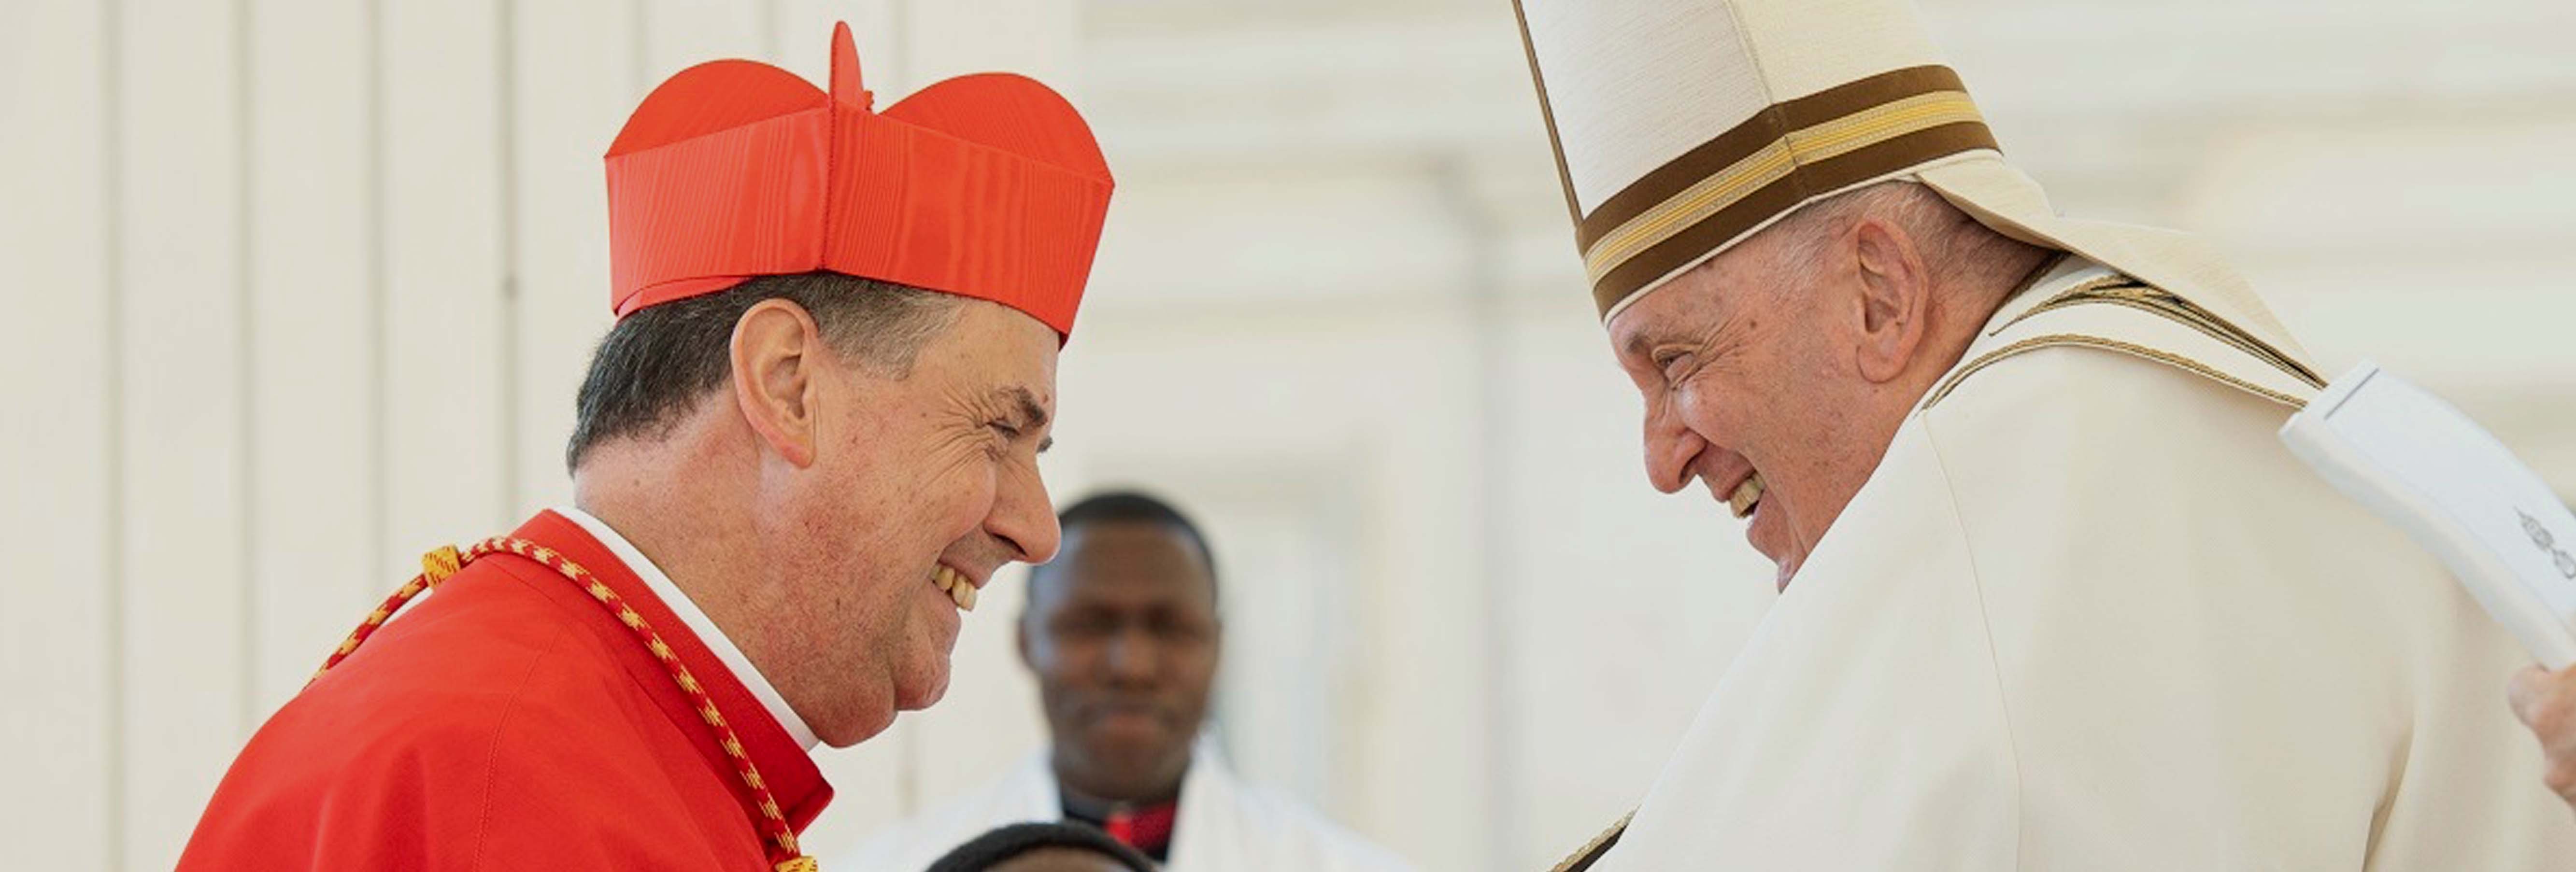 Il Rettor Maggiore è cardinale